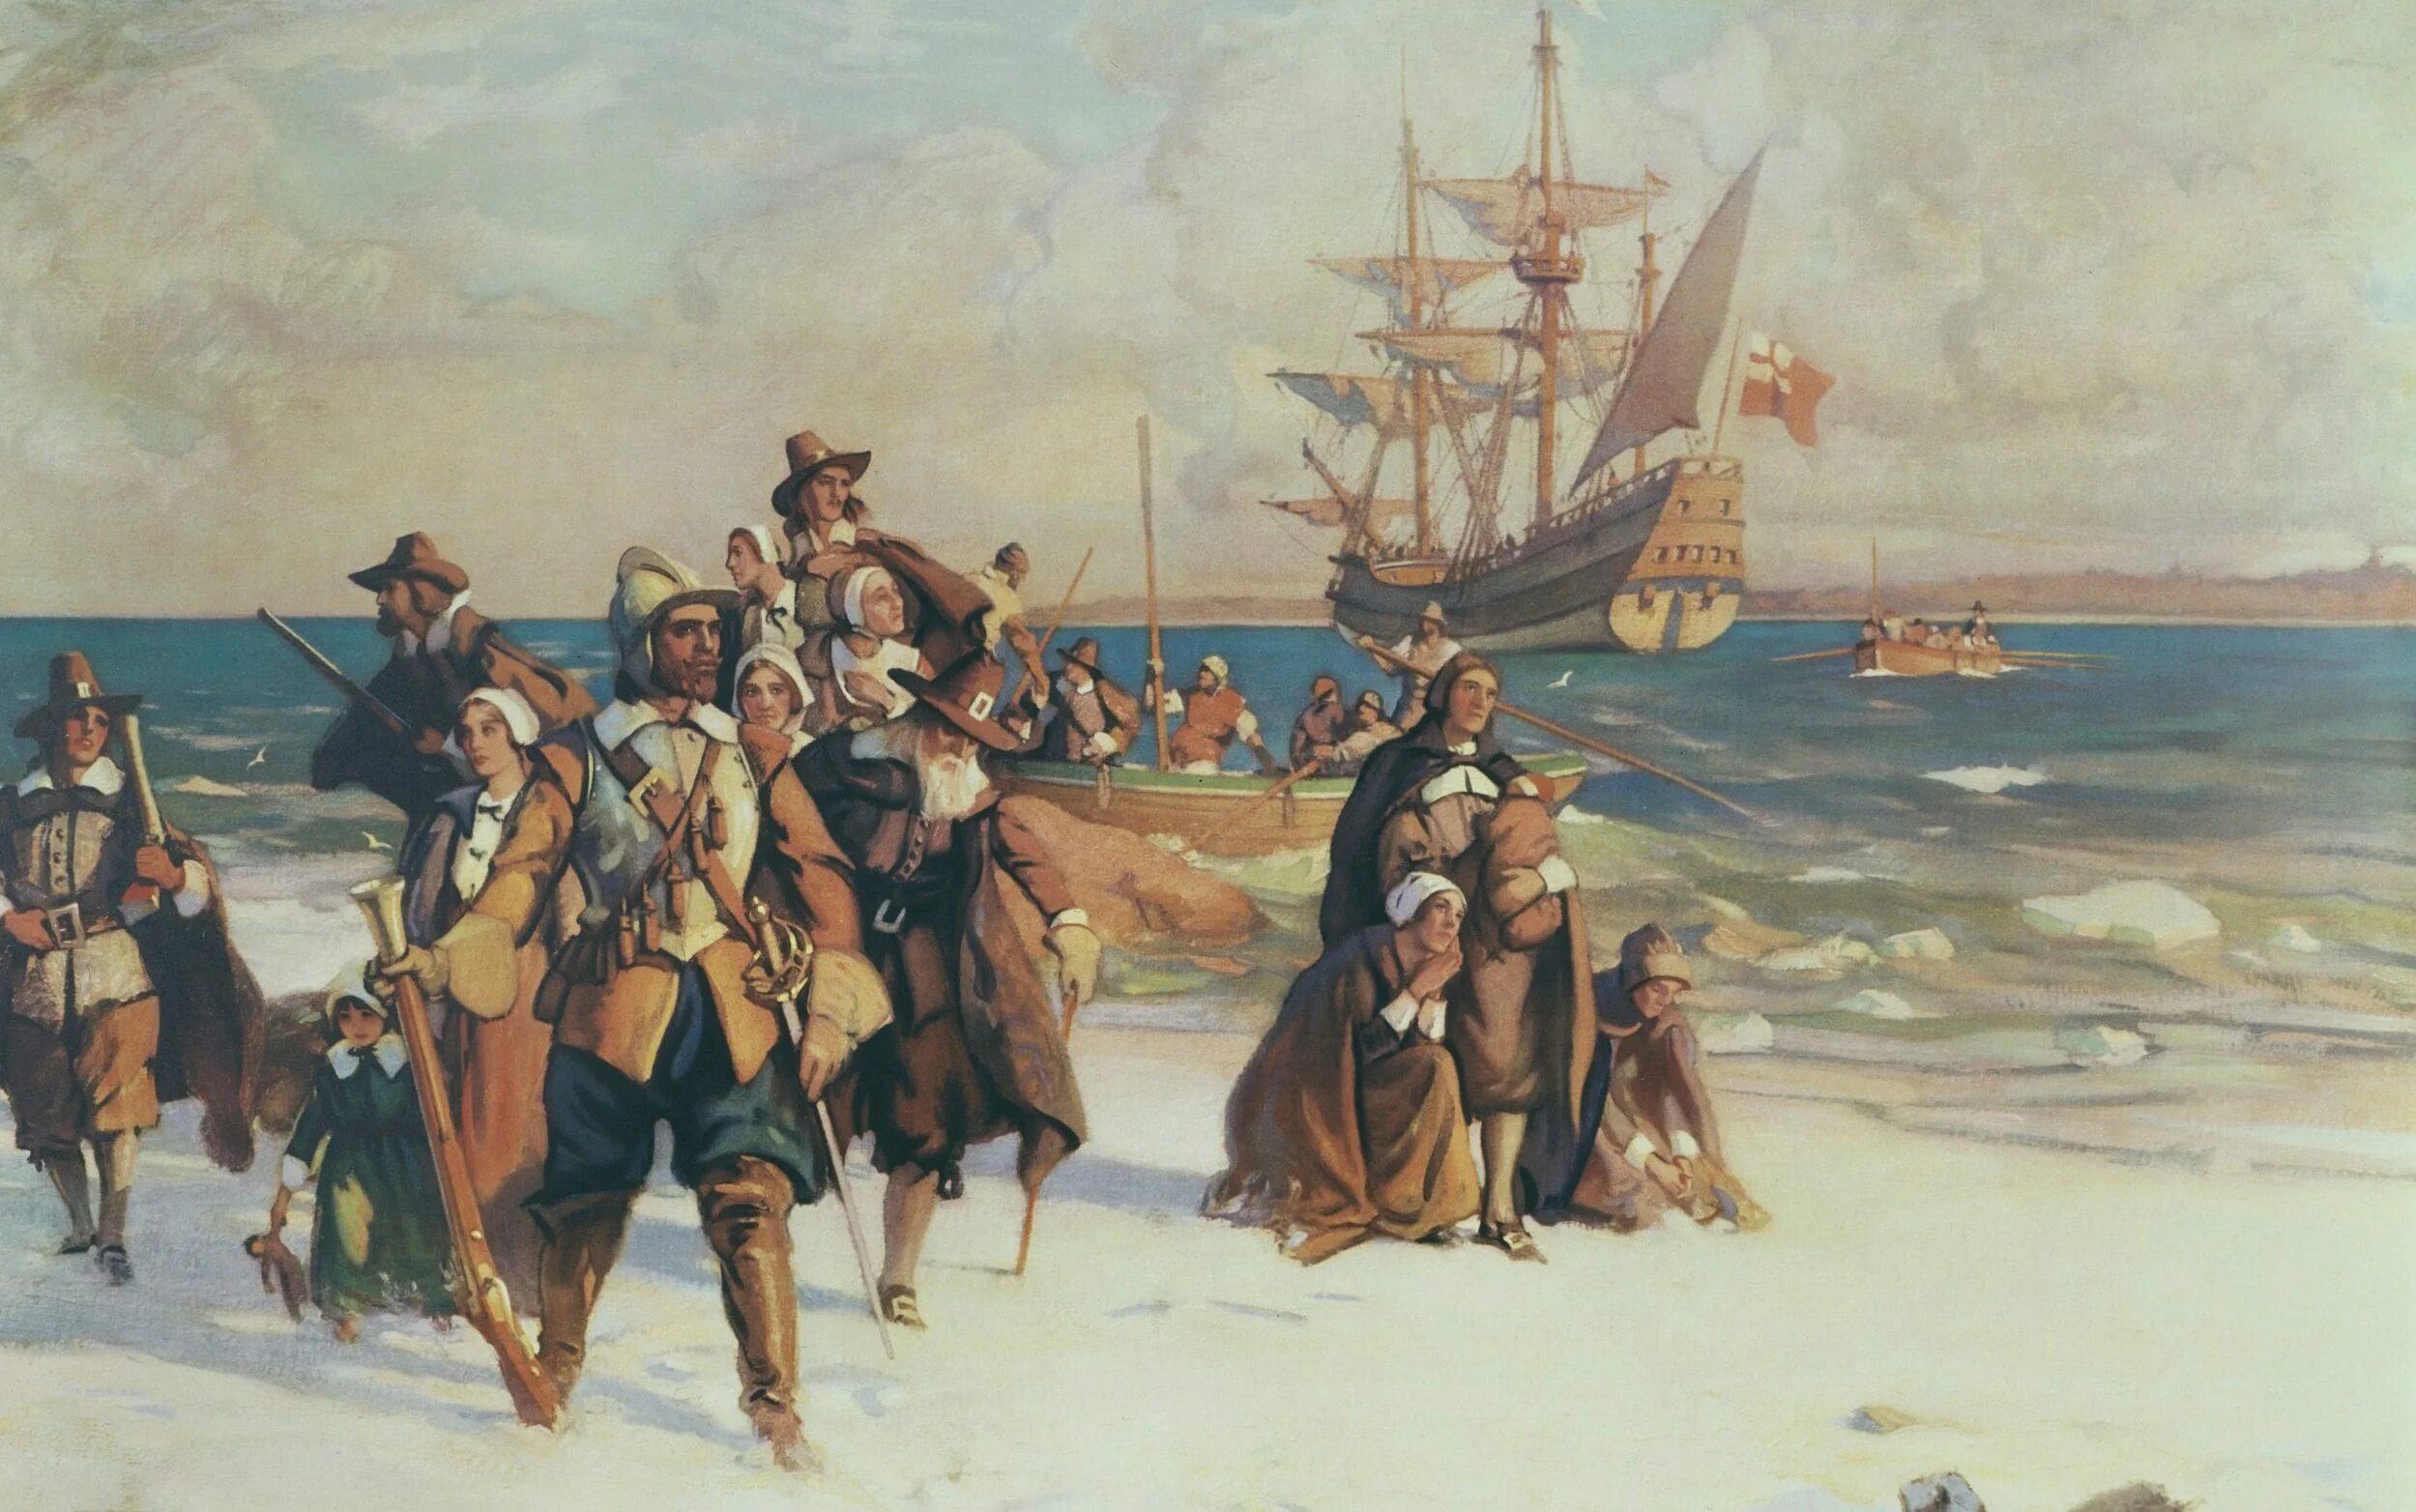 Корабль Мэйфлауэр 1620. Мэйфлауэр корабль 1620 год. 1620 Мэйфлауэр отцы Пилигримы. Корабль Mayflower первые поселенцы в Америке. Первый европеец ступивший на землю северной америки